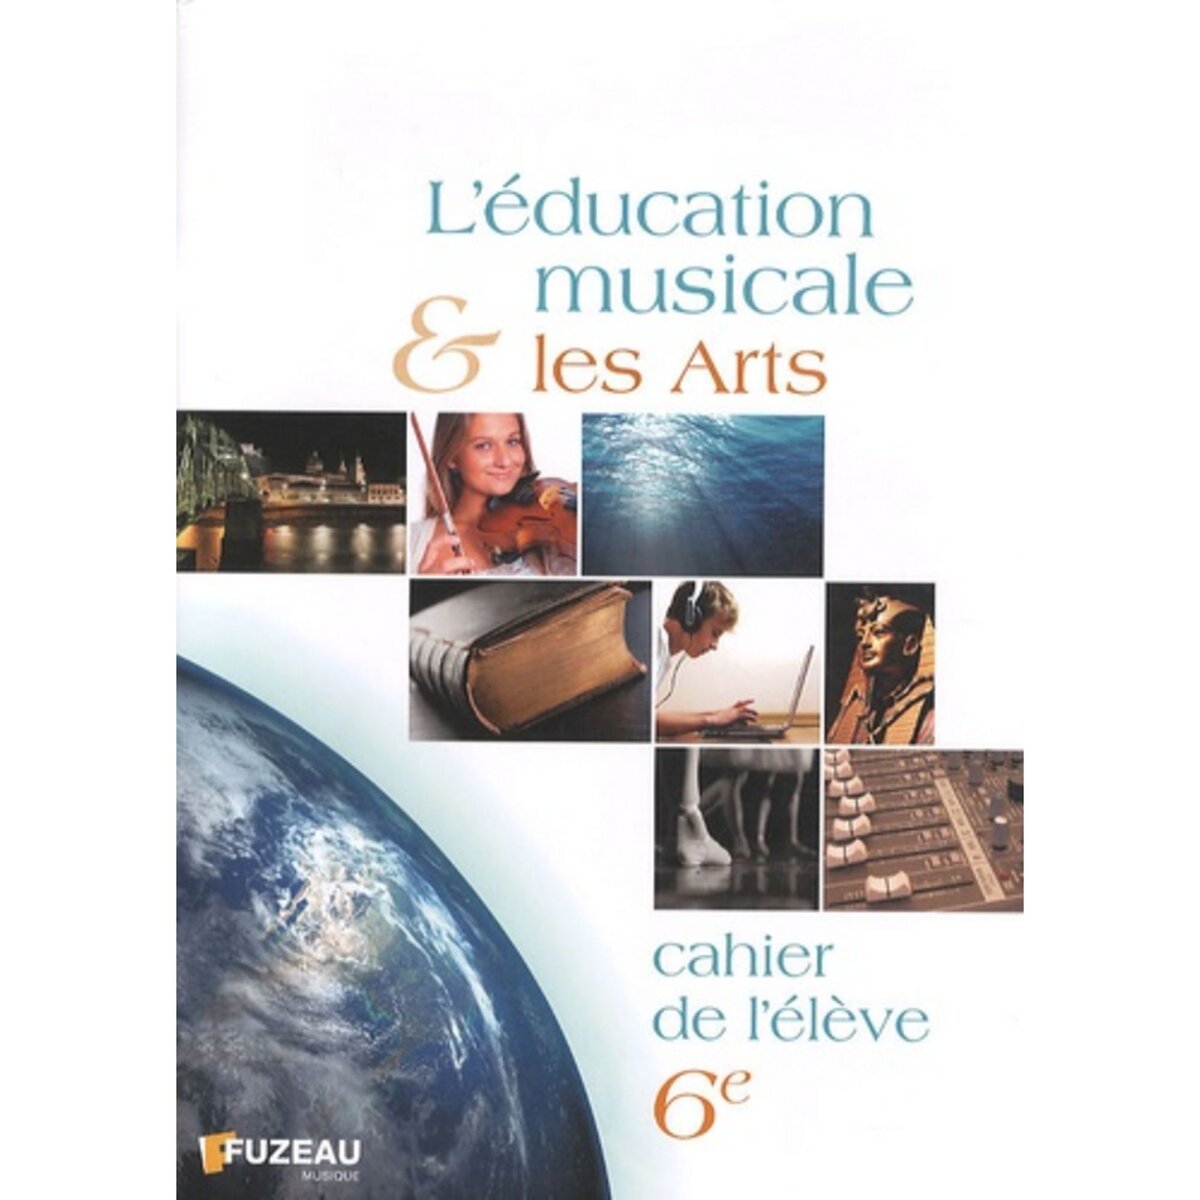  L'EDUCATION MUSICALE ET LES ARTS 6E. CAHIER DE L'ELEVE, Fuzeau